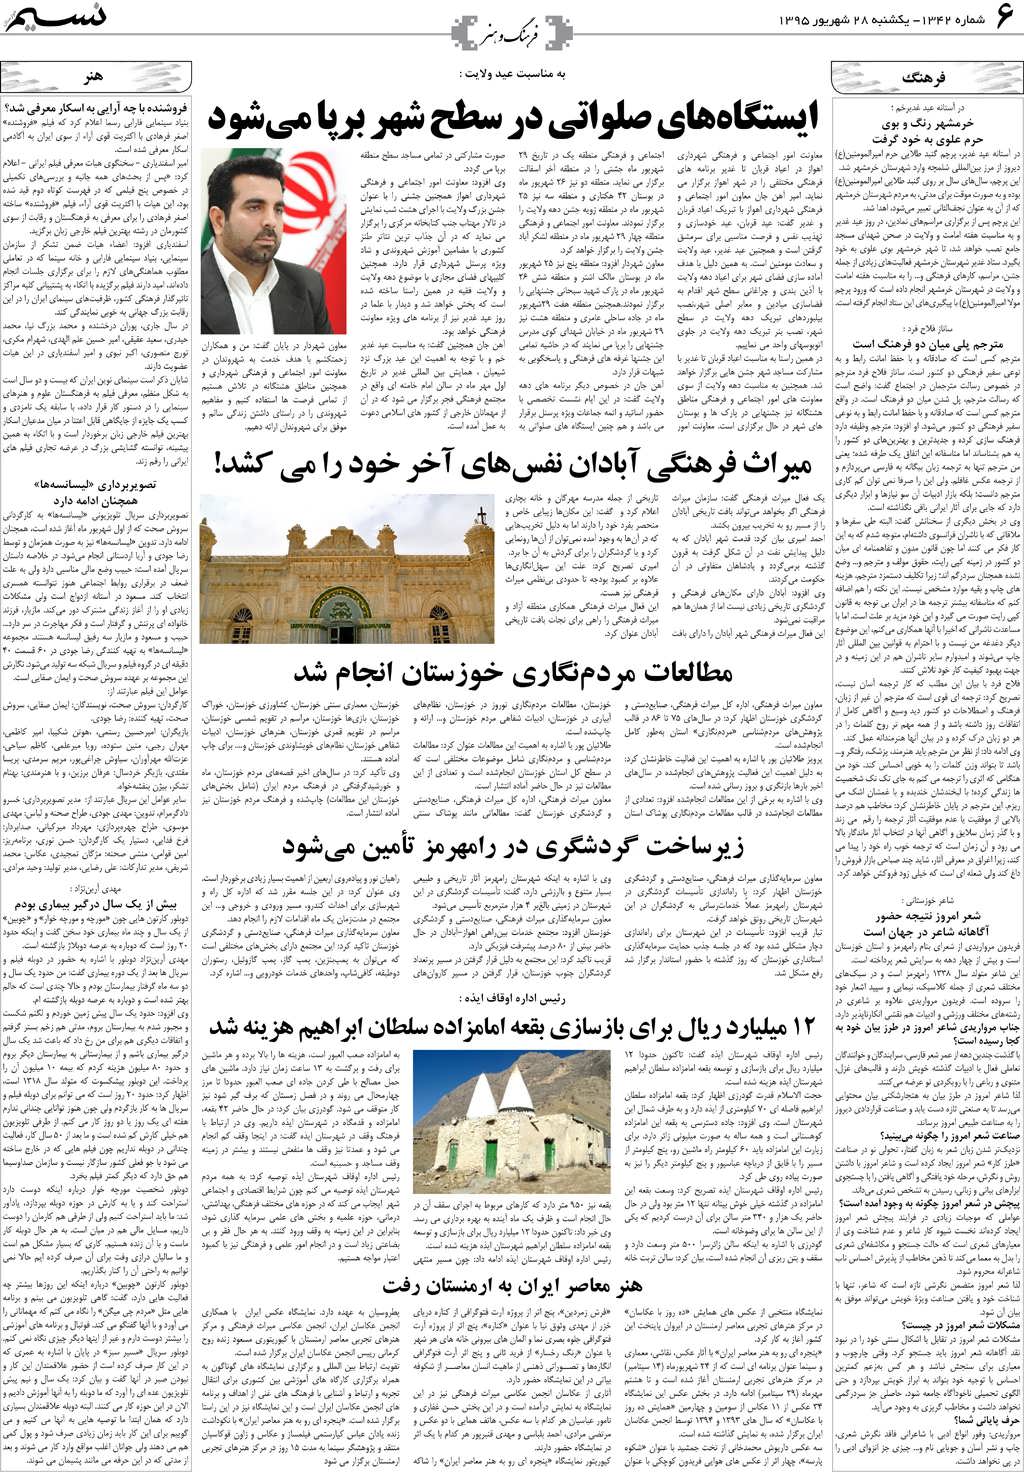 صفحه فرهنگ و هنر روزنامه نسیم شماره 1342